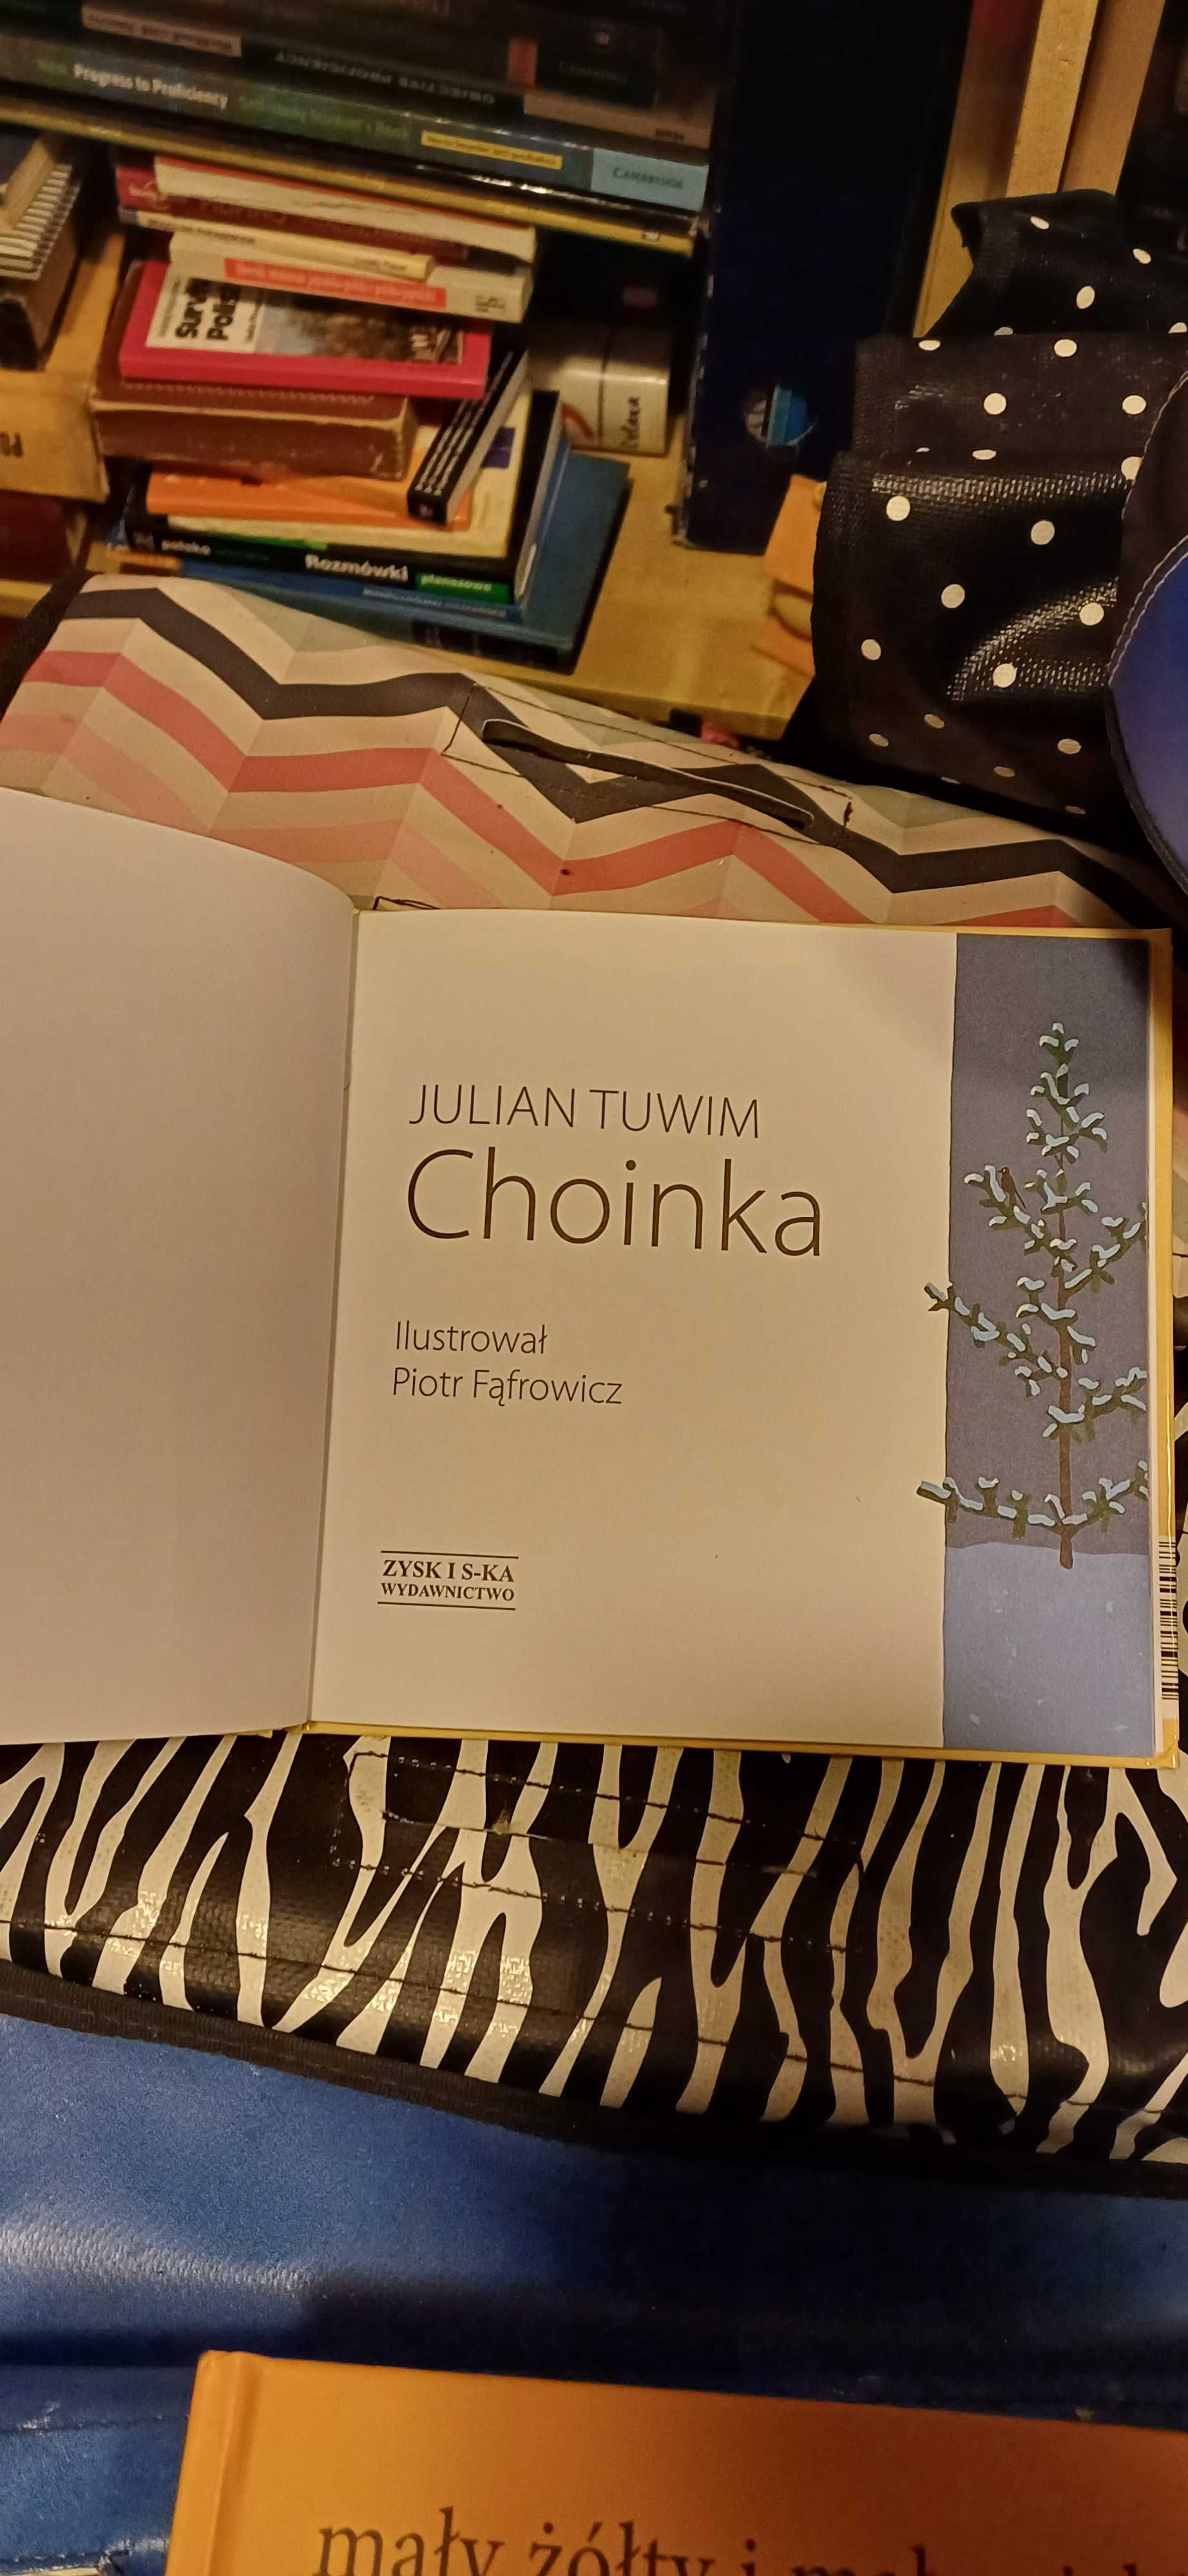 Julian Tuwim Choinka